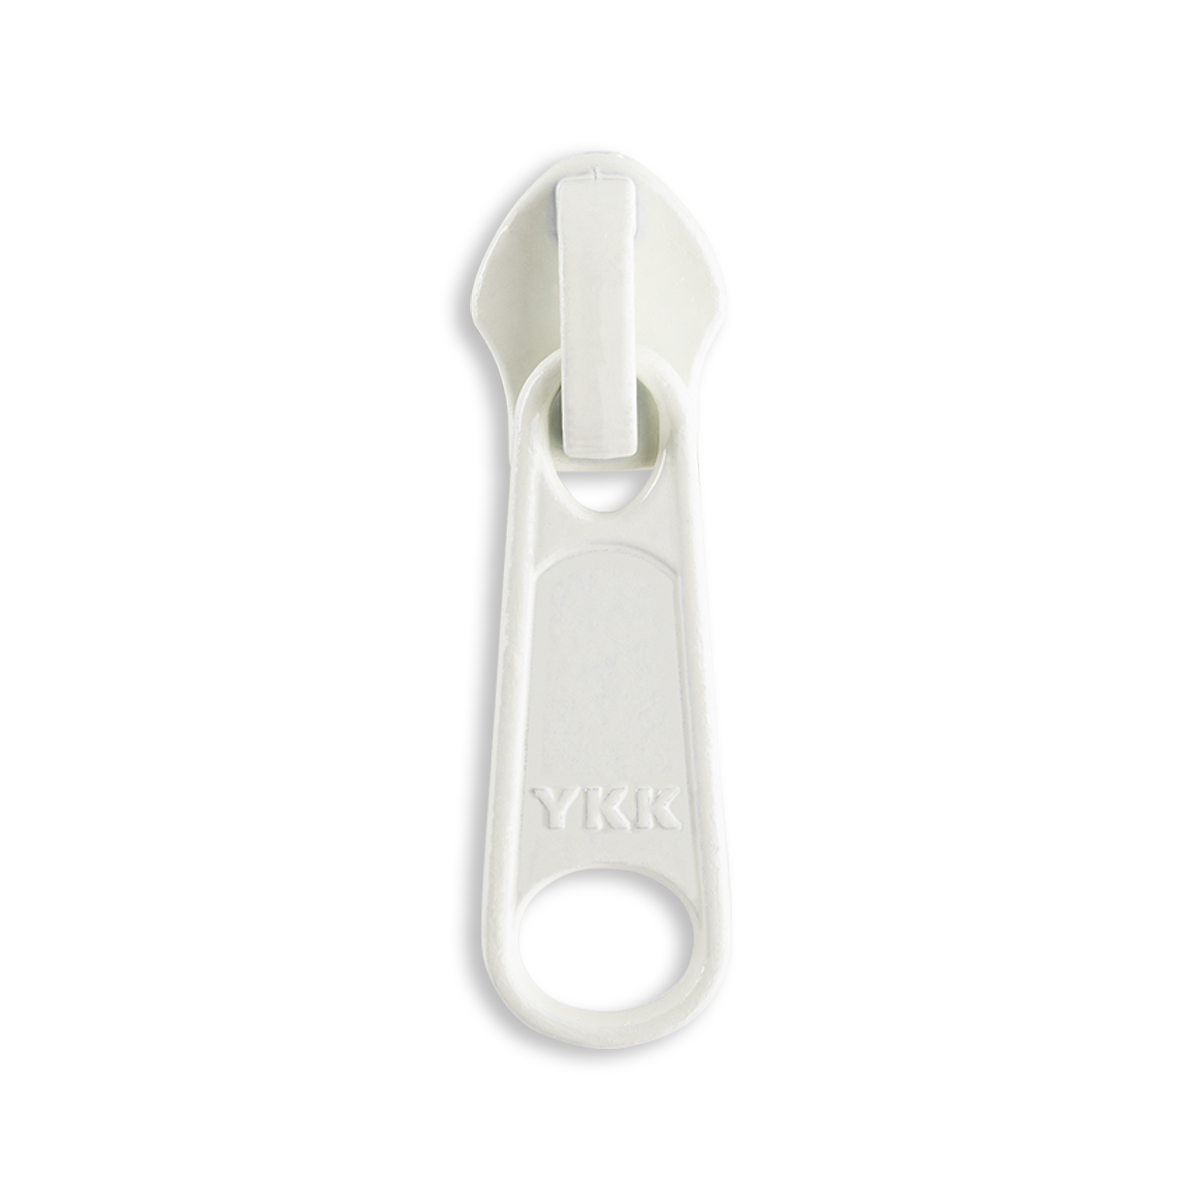 YKK #5 Nylon Coil Jacket Zipper Sliders - 2/Pack - Beige (572)